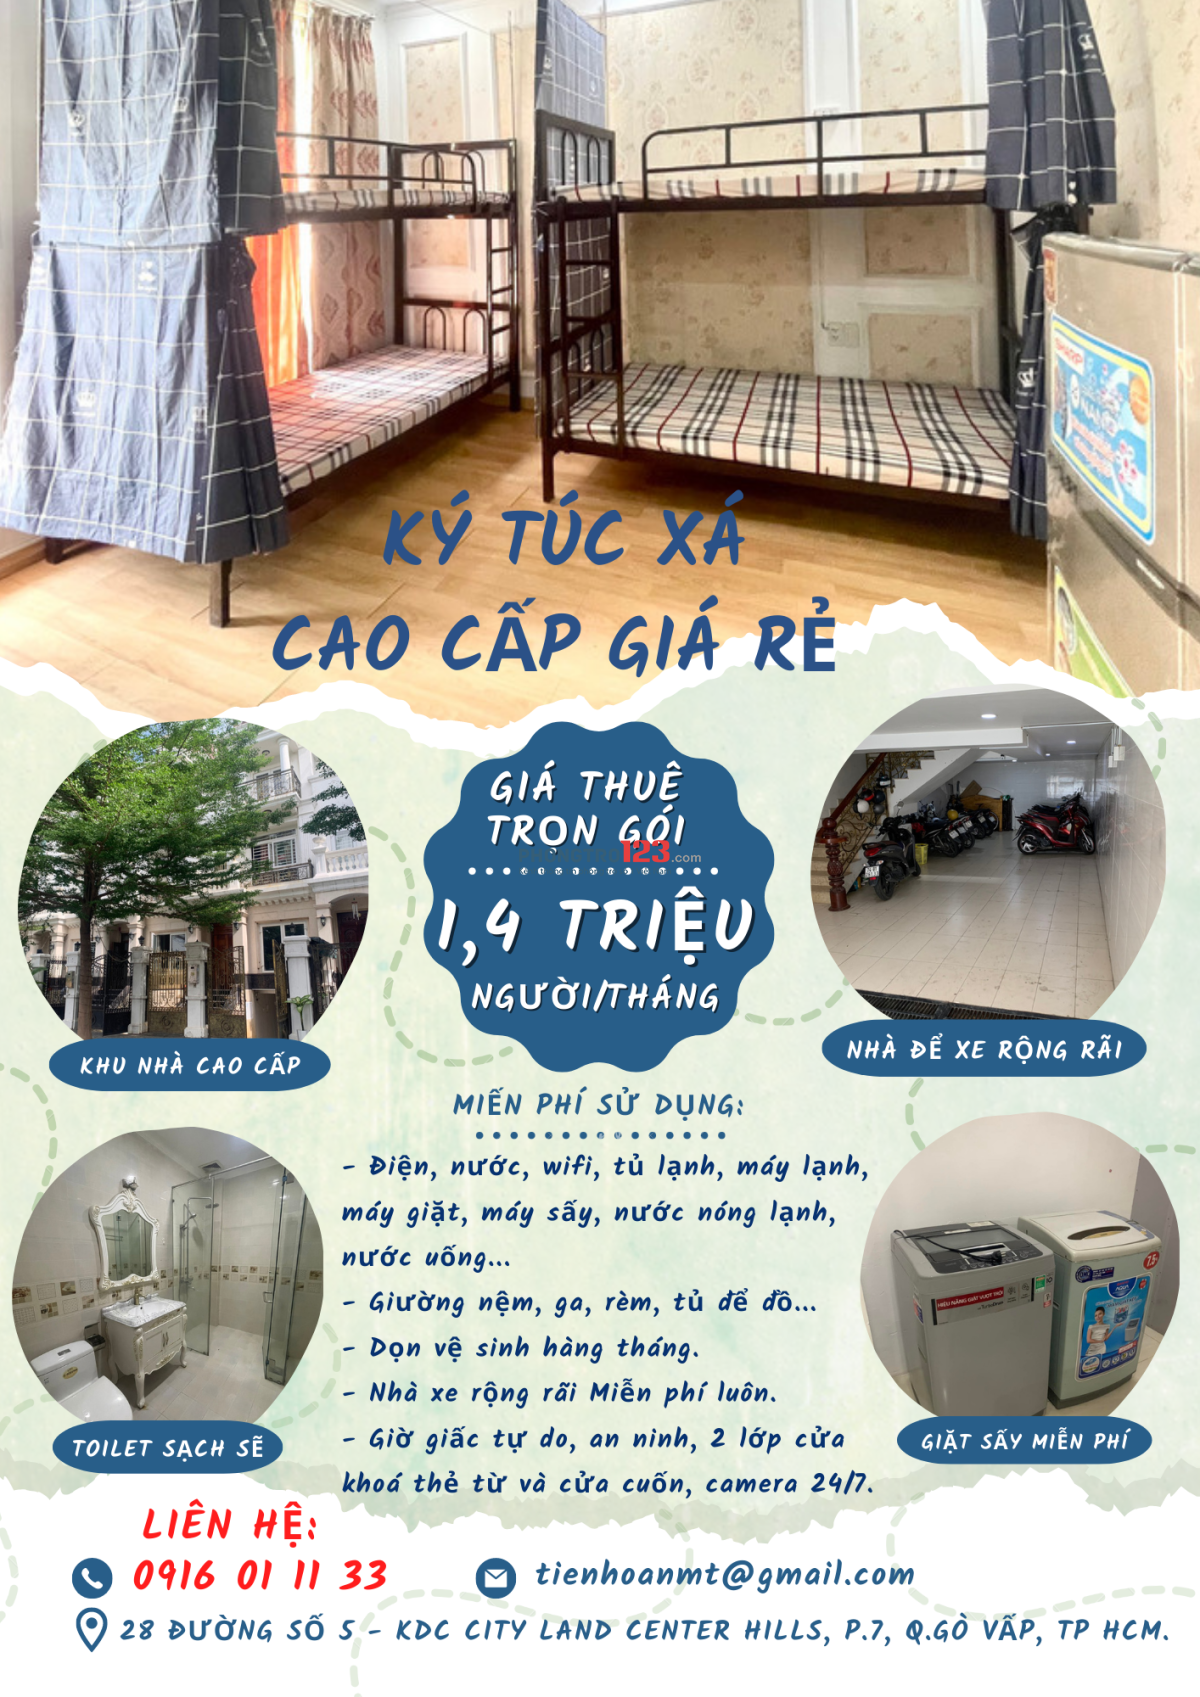 Ký túc xá cao cấp giá rẻ Gò Vấp, Gần Quang Trung - Nguyễn Oanh, Giờ tự do, trọn gói 1,4 triệu